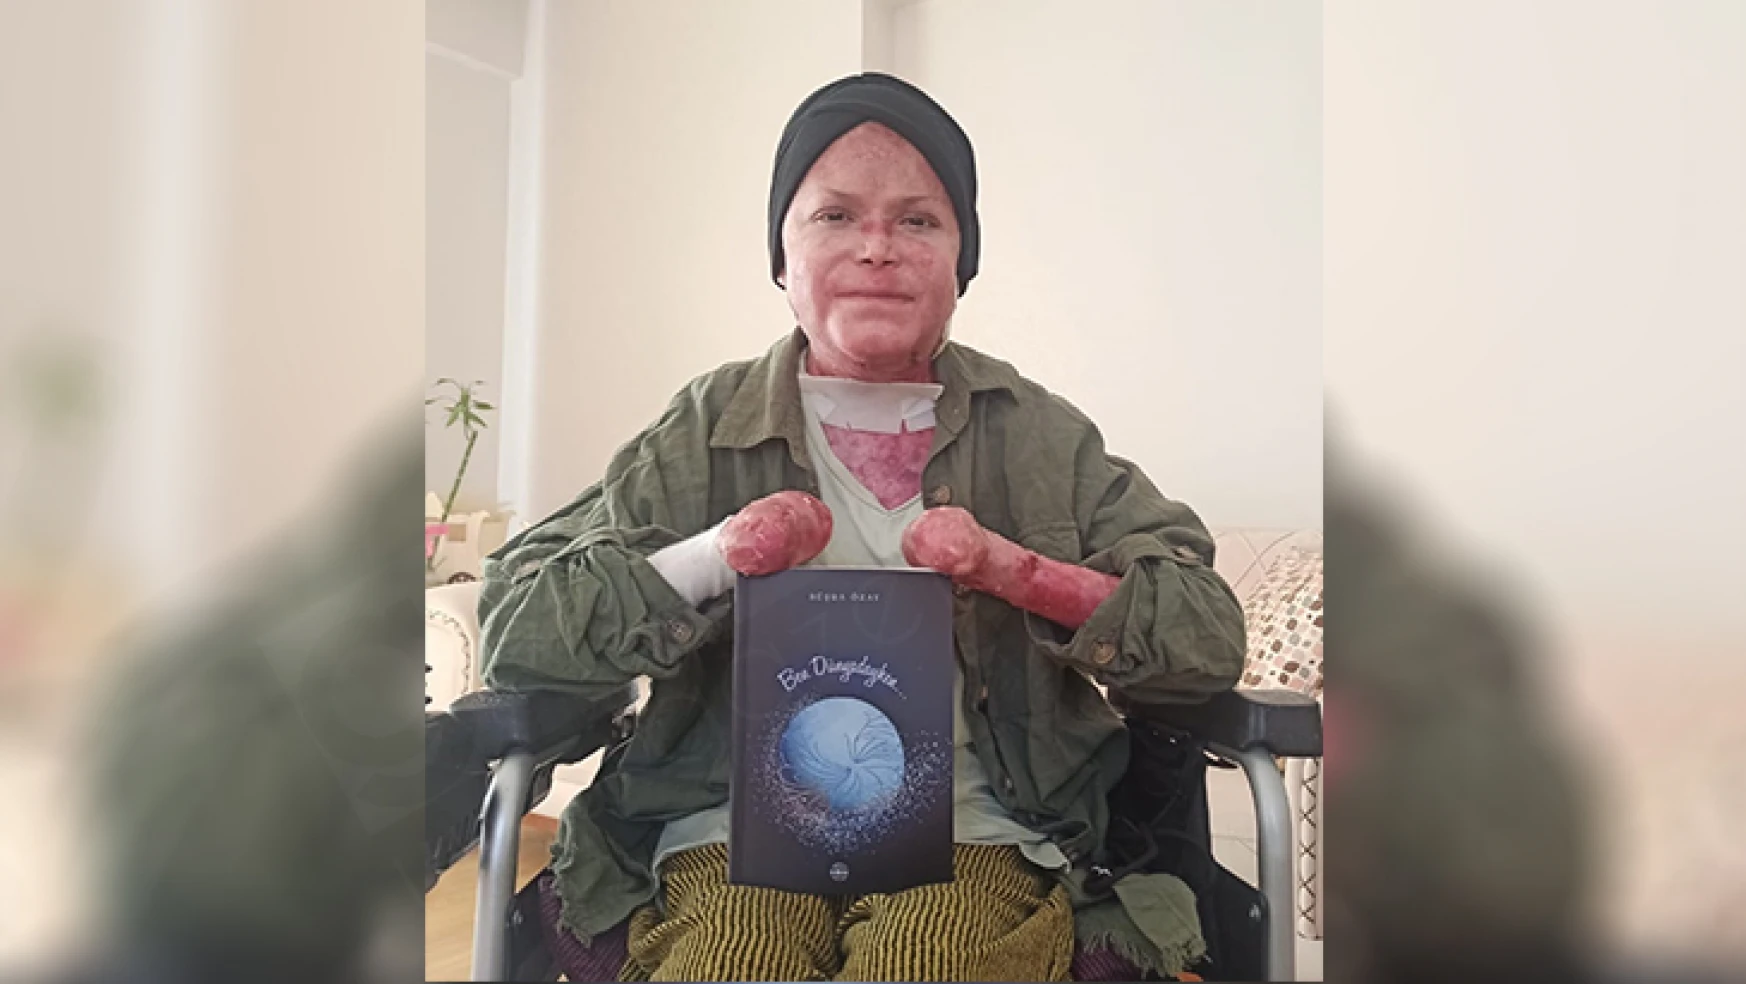 Kelebek hastası Büşra, 'Ben Dünyadayken' adlı kitap yazdı